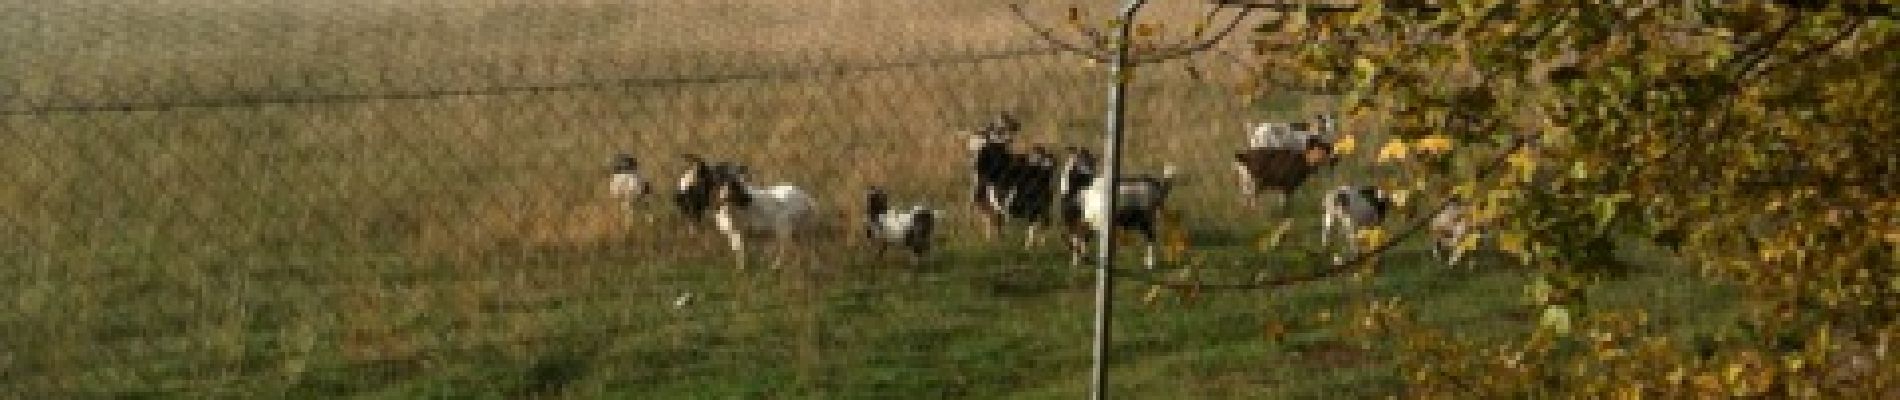 POI Limogne-en-Quercy - Chèvres au pâturage - Photo